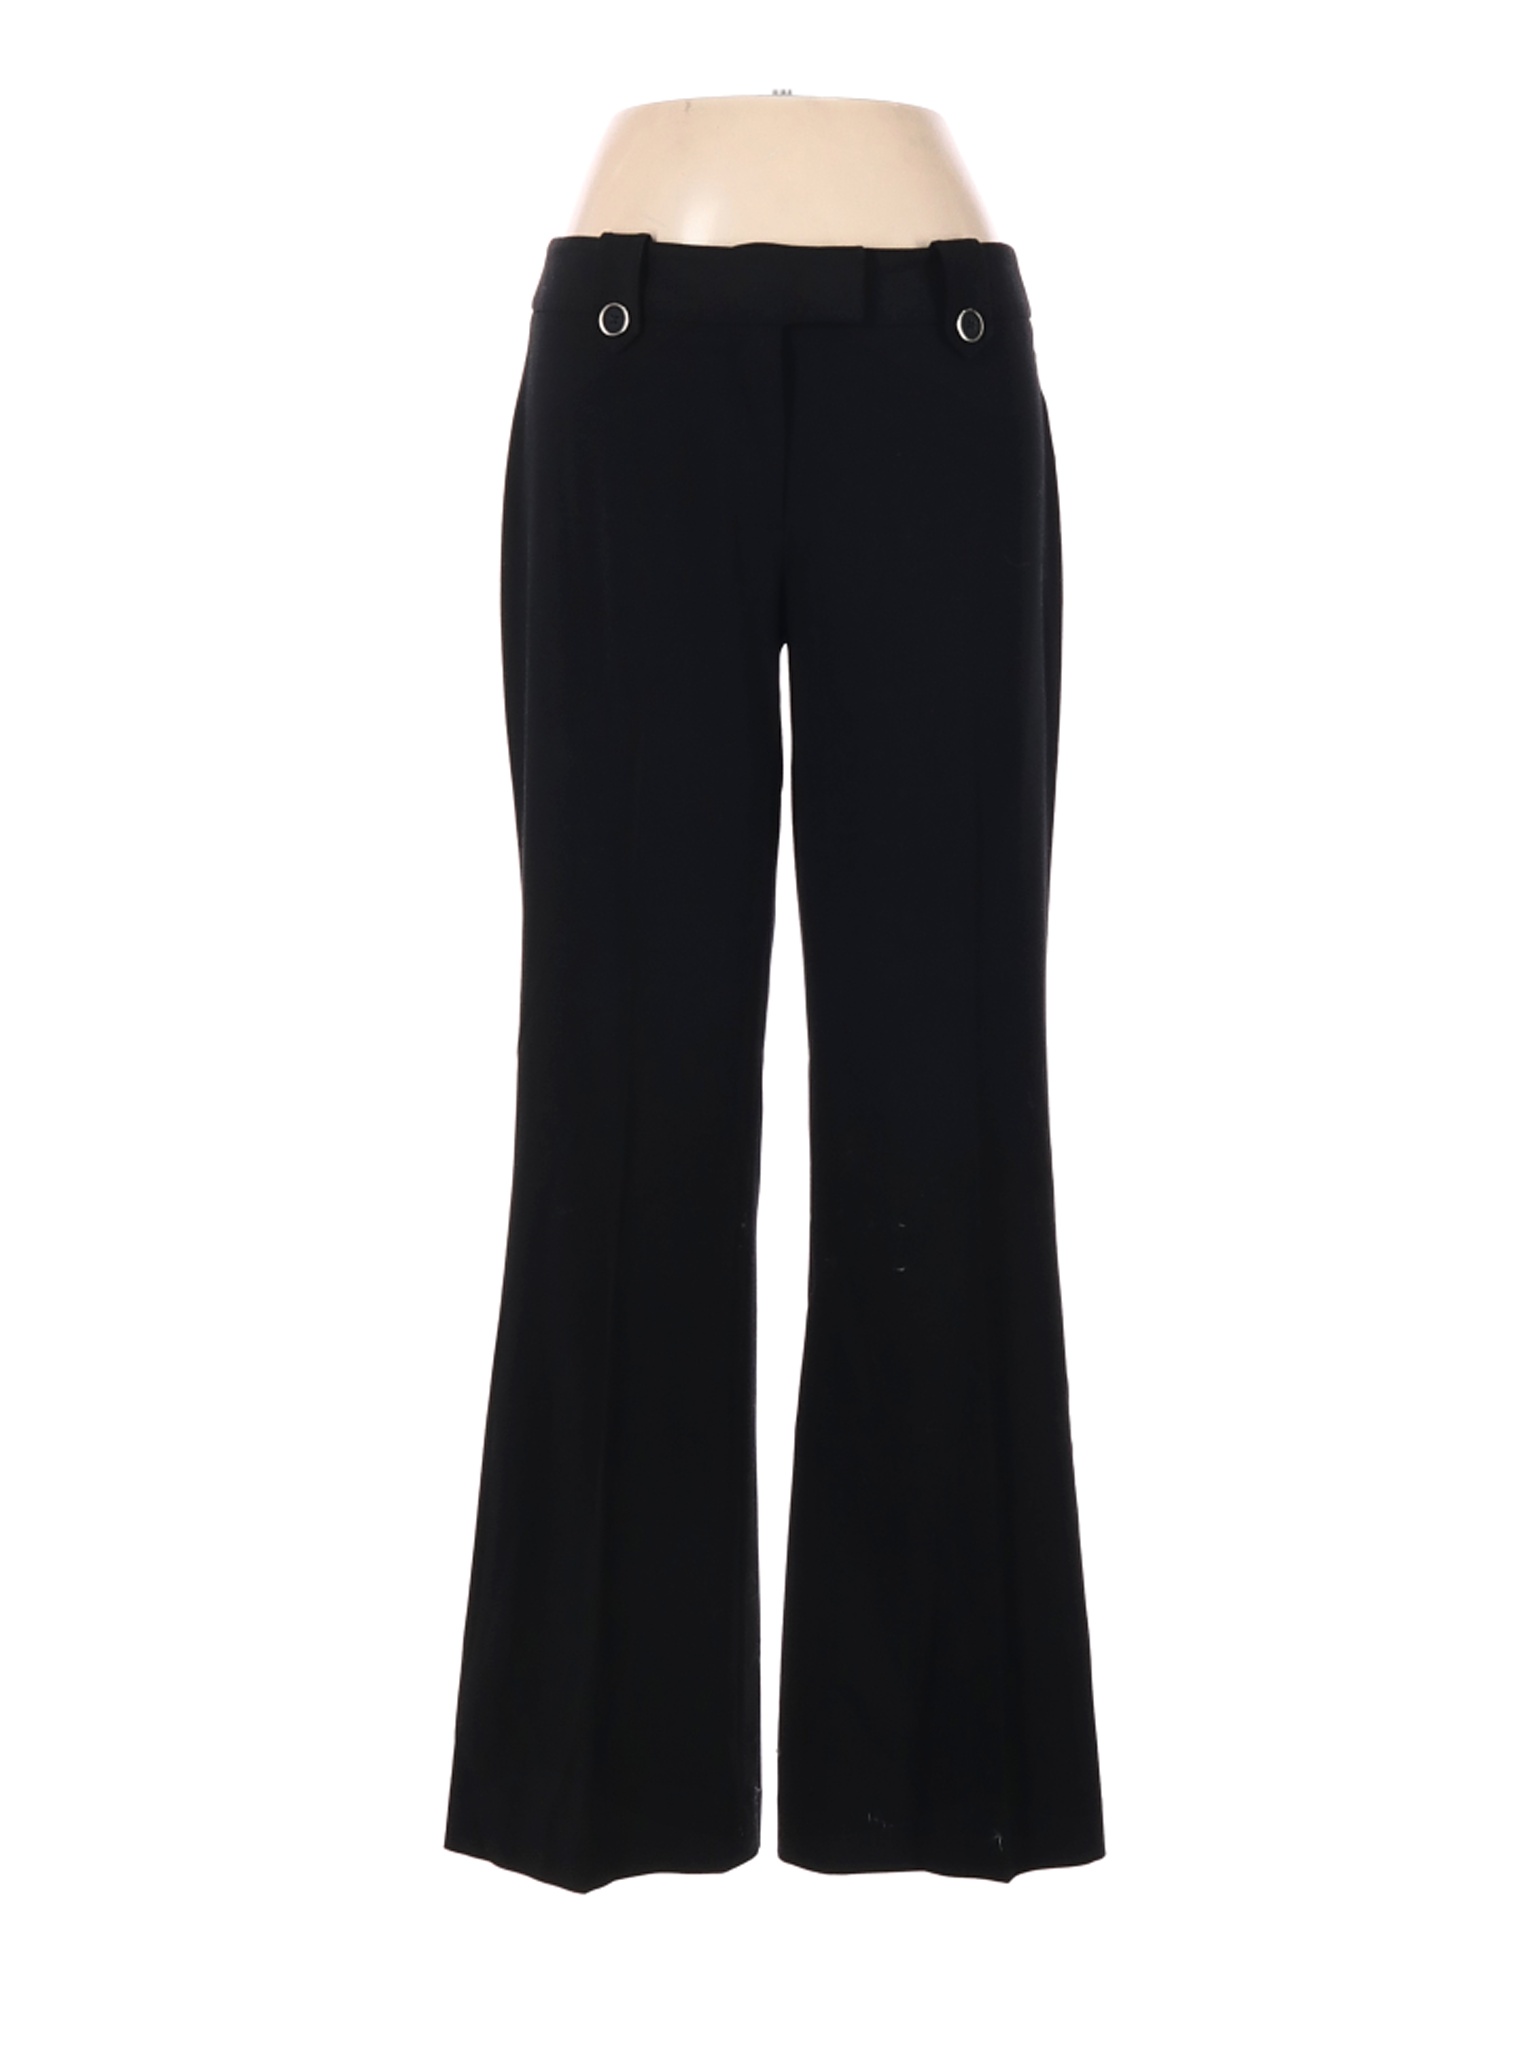 Alfani Women Black Dress Pants 6 Petites | eBay